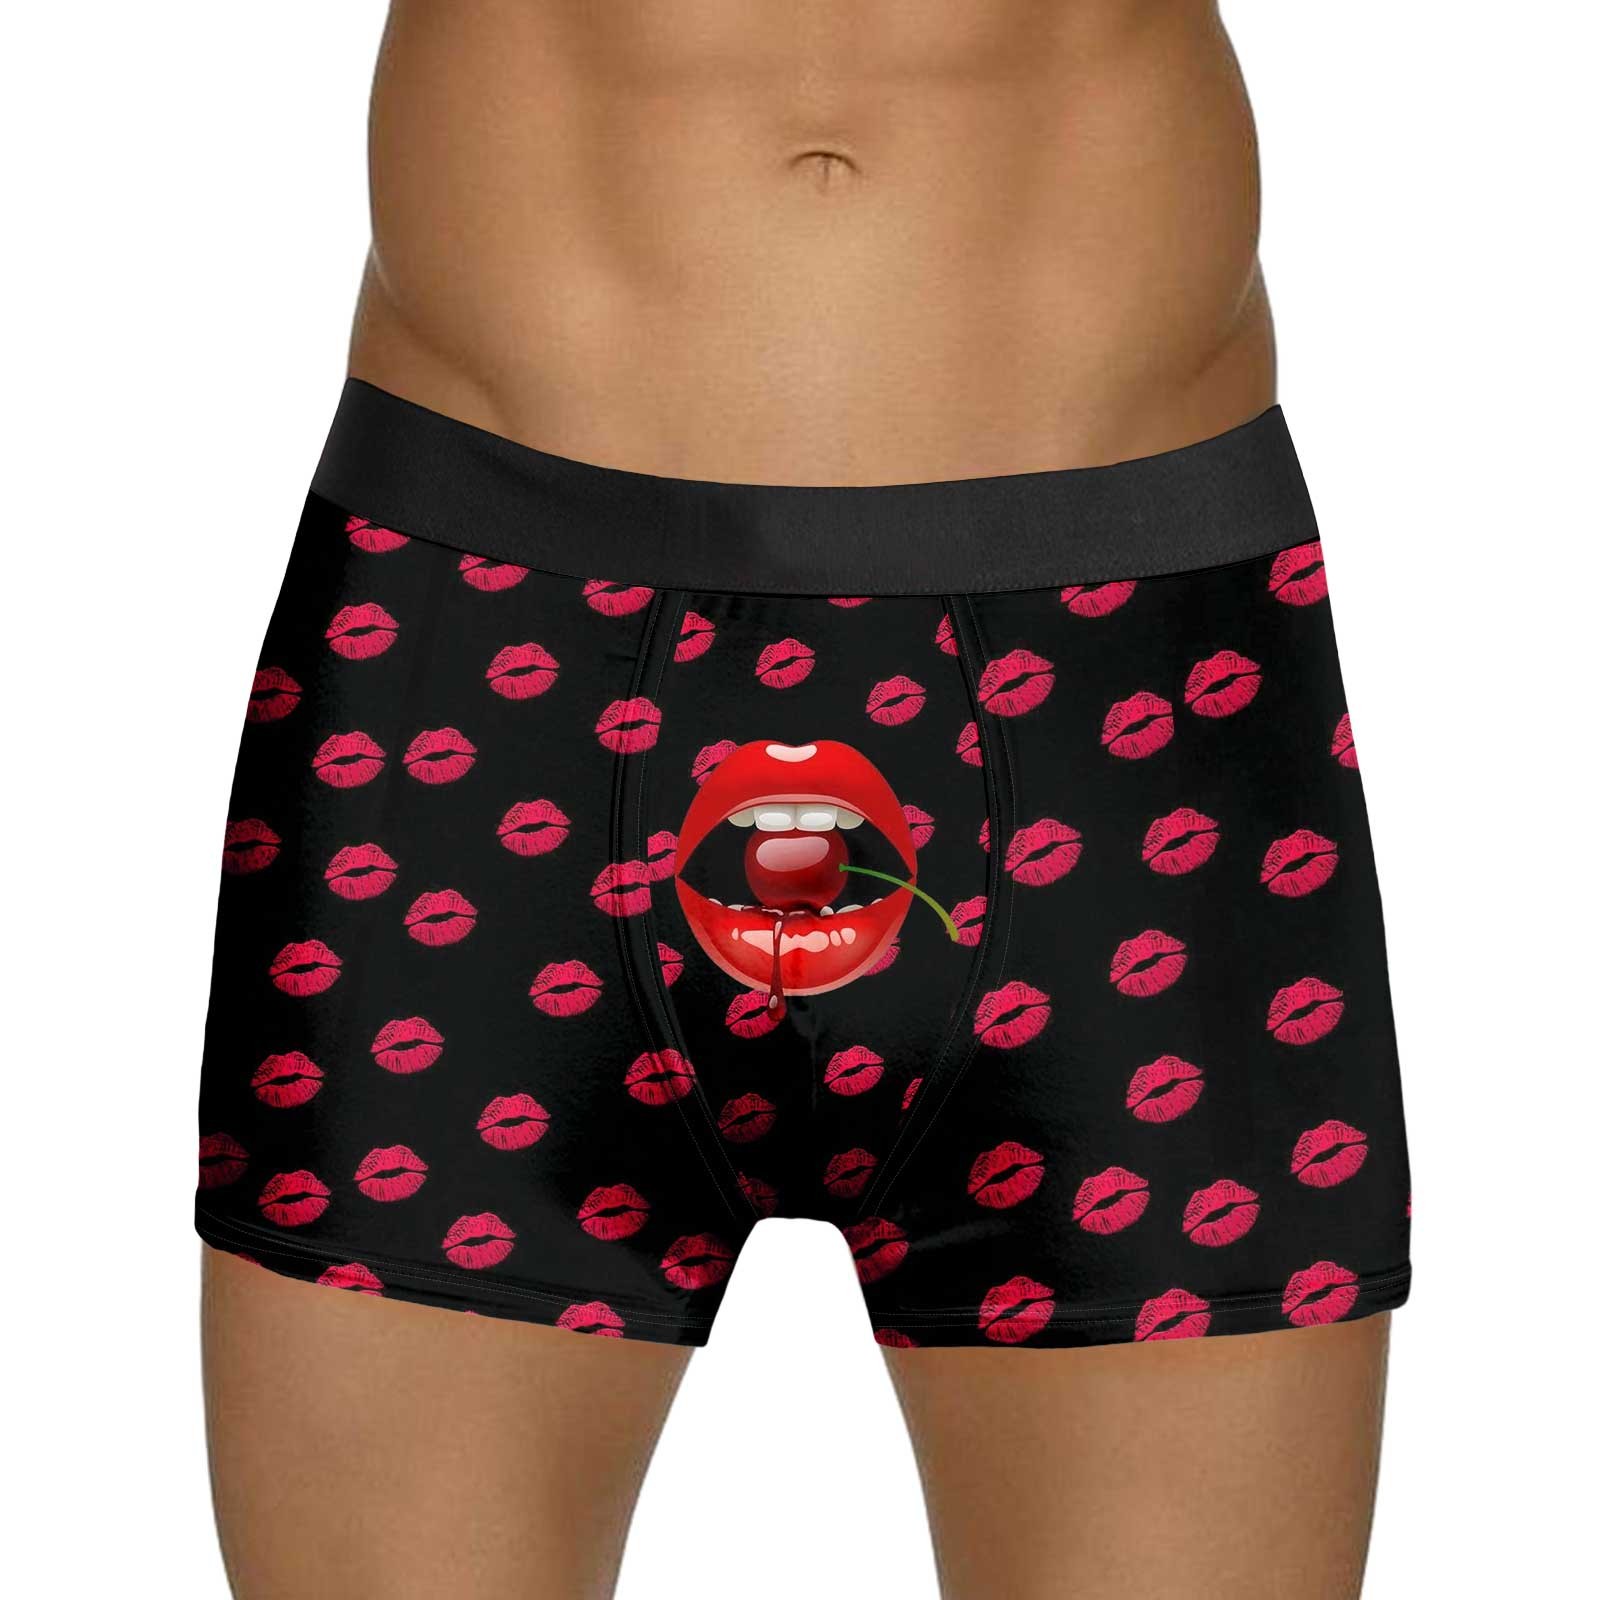 FhsagQ Men's Underwear Boxers Briefs Short Mens Valentines Day Printed ...